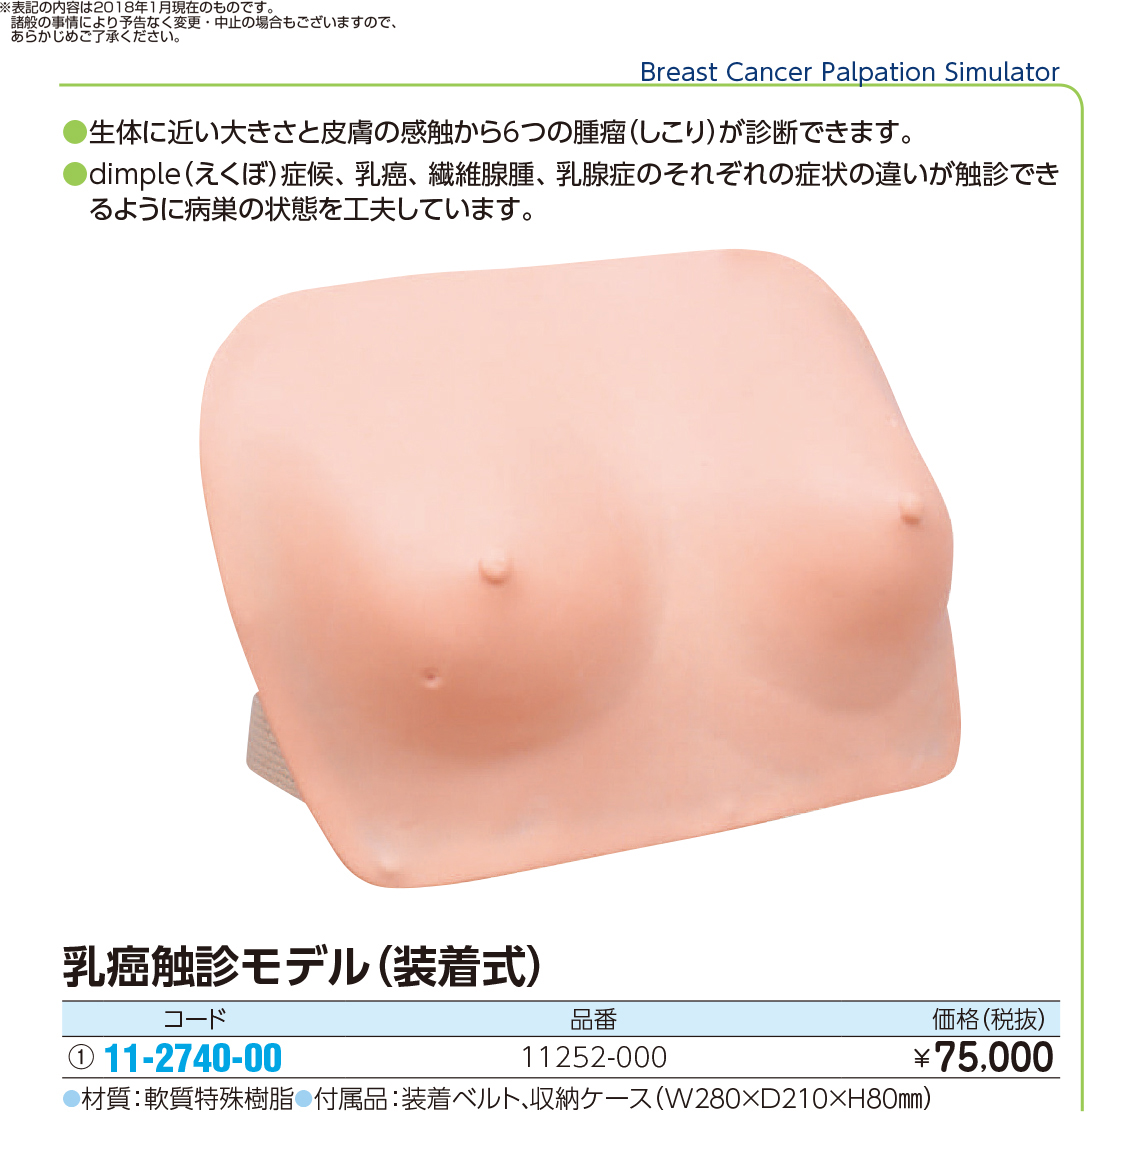 (11-2740-00)乳癌触診モデル（装着式） 11252-000(M71) ﾆｭｳｶﾞﾝｼｮｸｼﾝﾓﾃﾞﾙ(京都科学)【1台単位】【2018年カタログ商品】